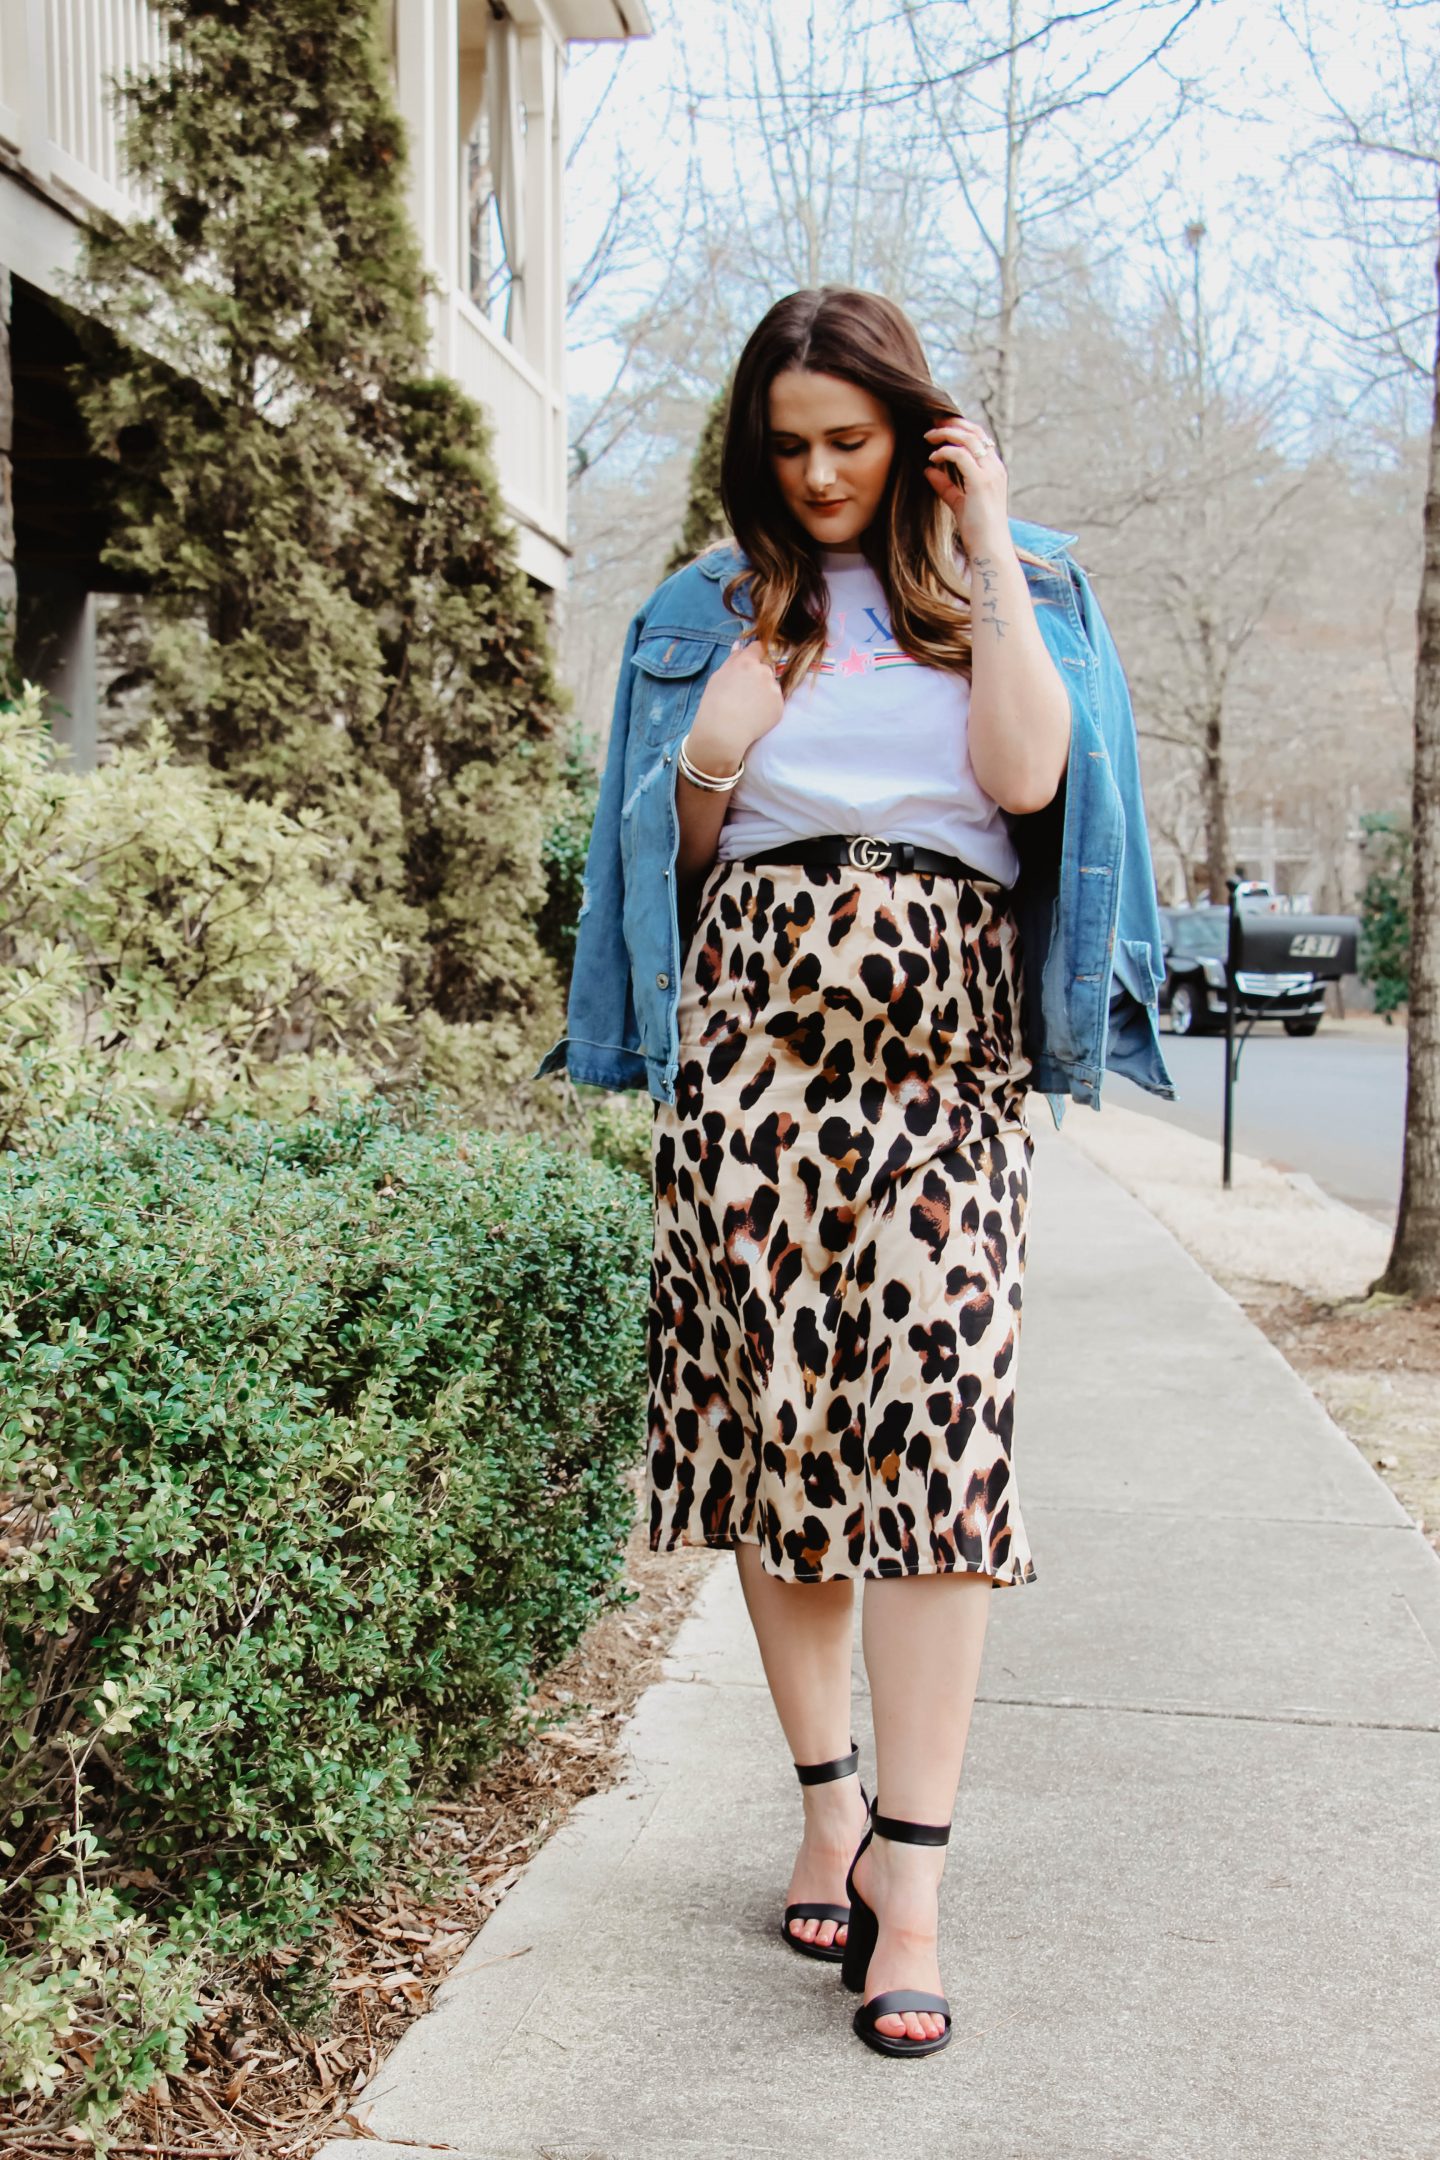 Spring Trend Alert: The Midi Skirt